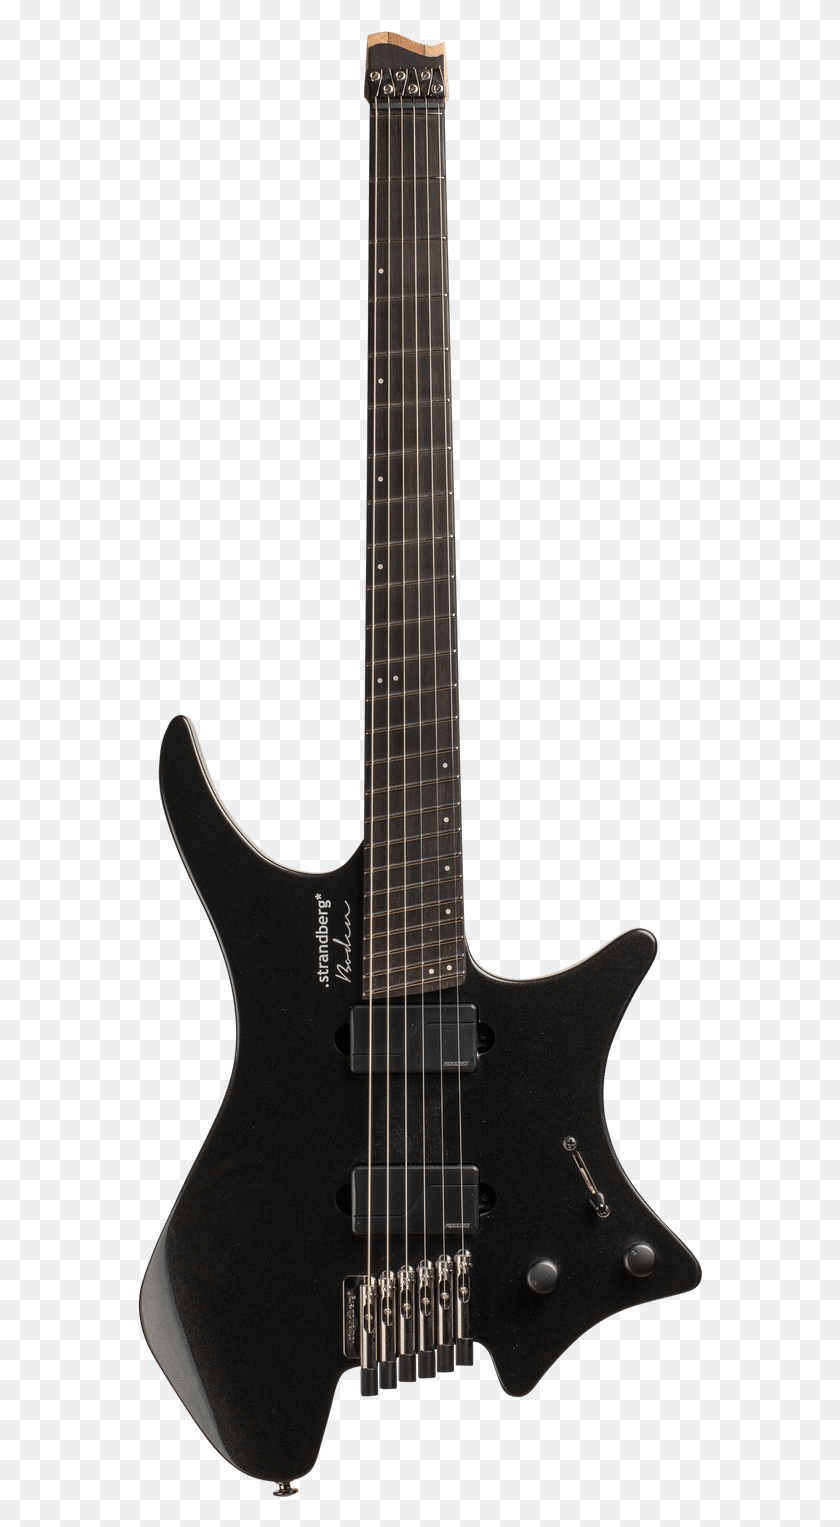 565x1467 Boden Metal 6 Black Pearl Guitarra Strandberg Boden Prog, Actividades De Ocio, Instrumento Musical, Guitarra Eléctrica Hd Png